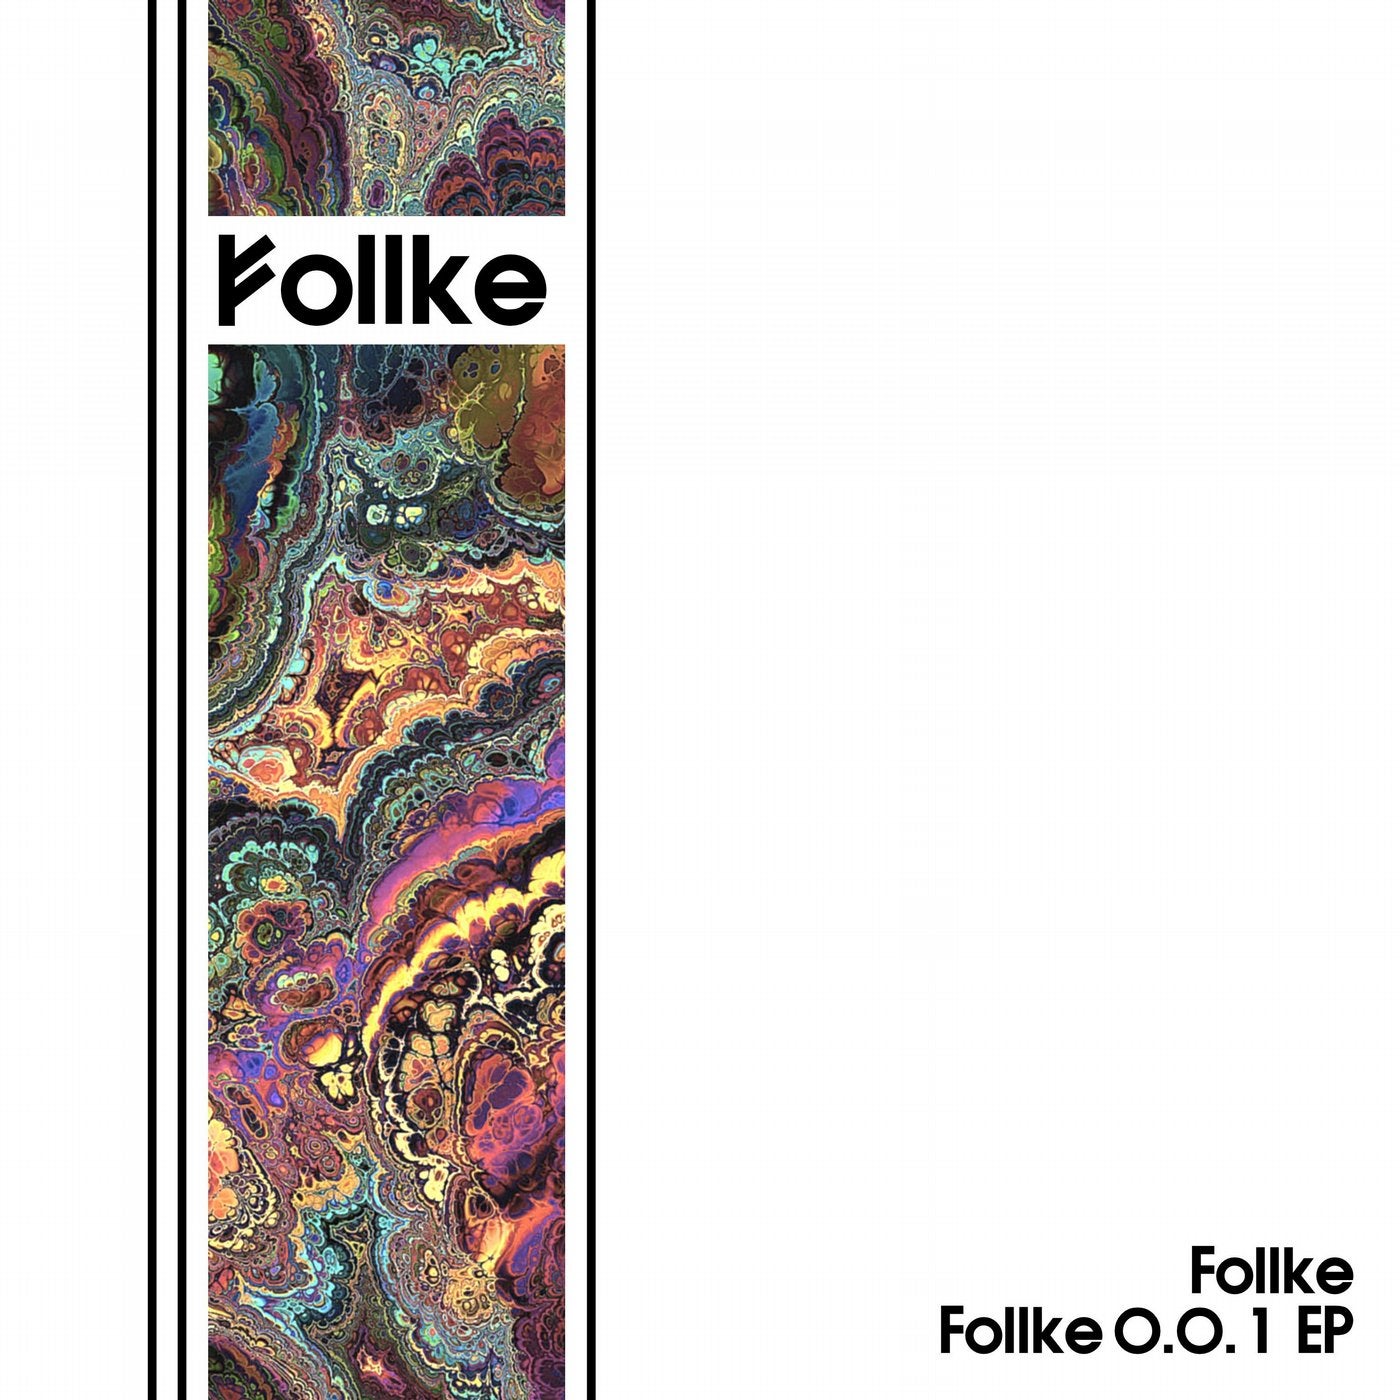 Follke 0.0.1